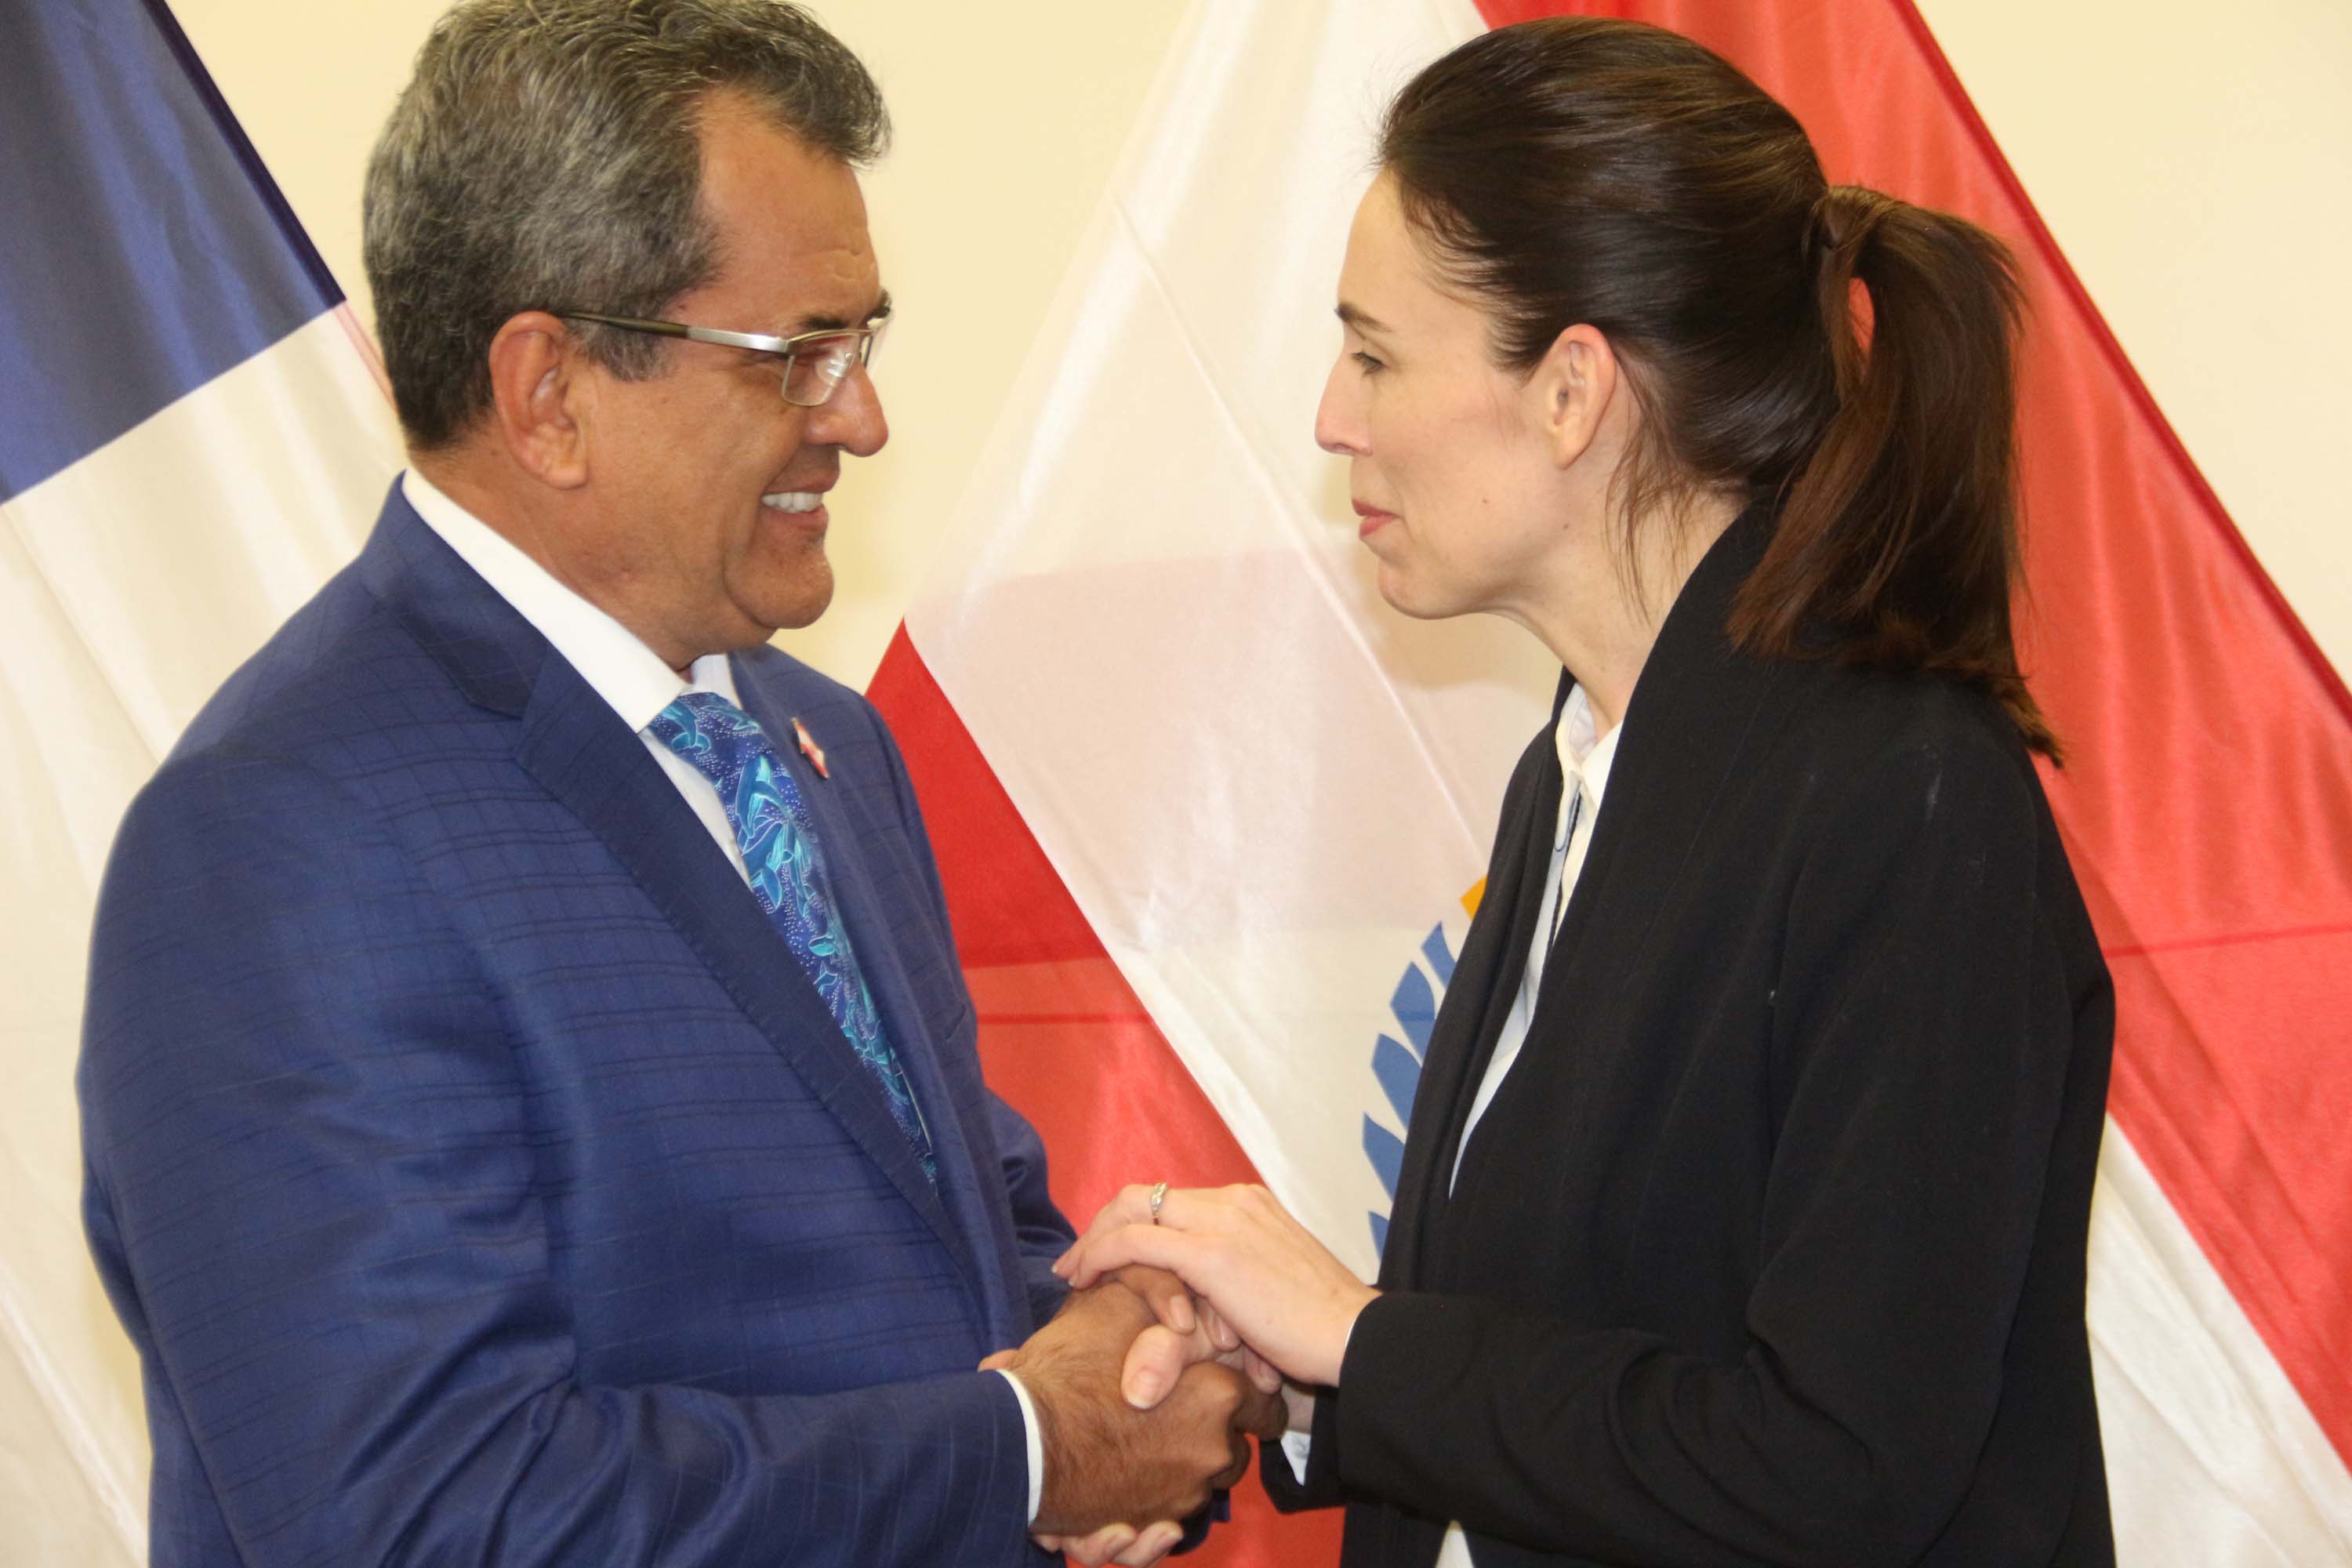 Langues polynésiennes, accord de coopération, One Planet Summit : Le président de la Polynésie s’est entretenu avec la Première ministre de Nouvelle-Zélande